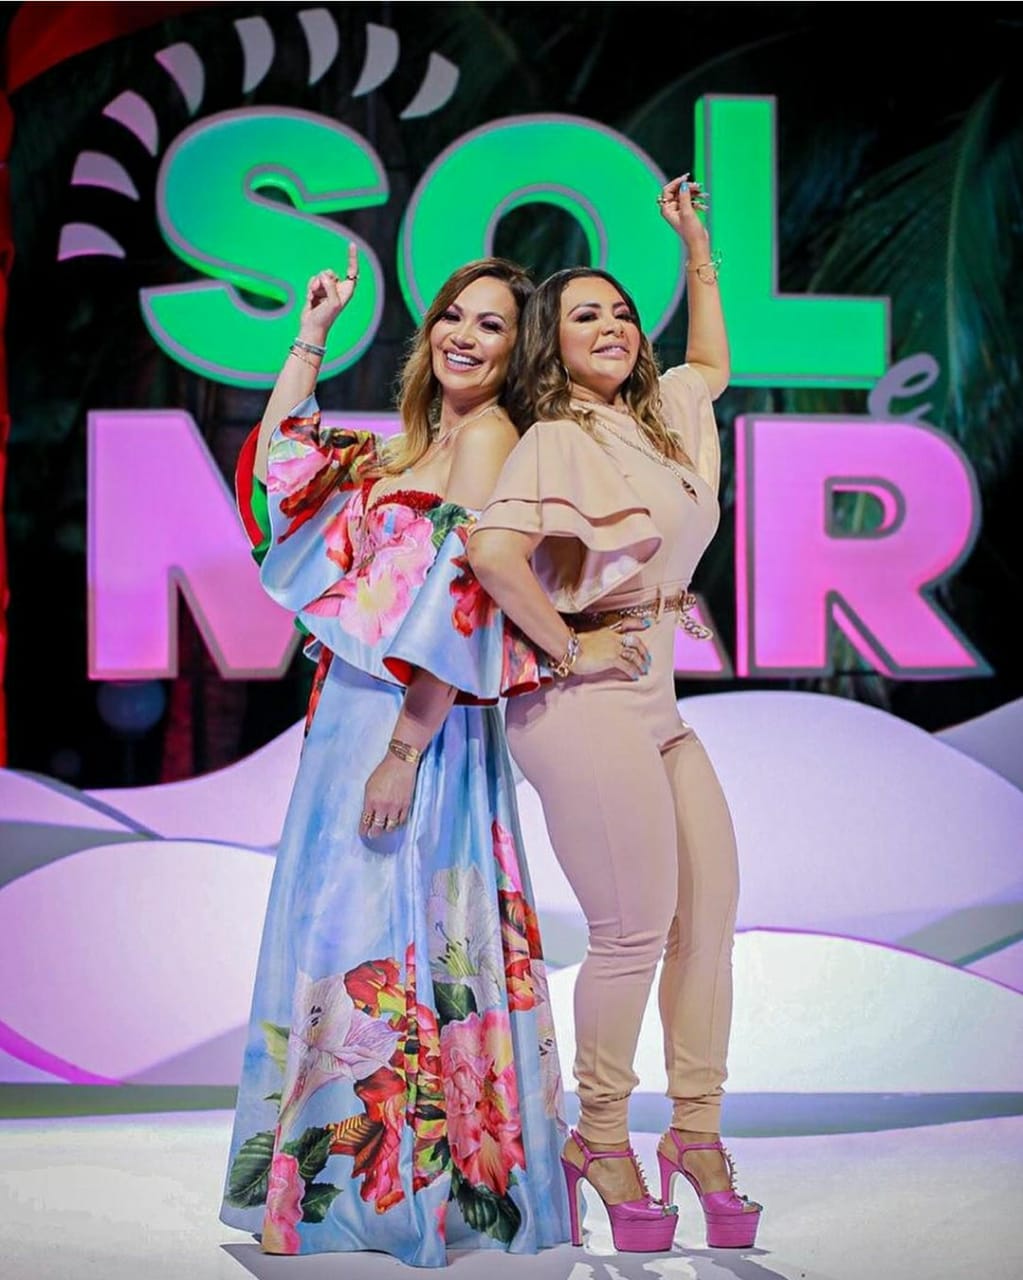 Márcia Fellipe e Solange Almeida entram no top 100 do Spotify com a música "JBL". Foto: Divulgação